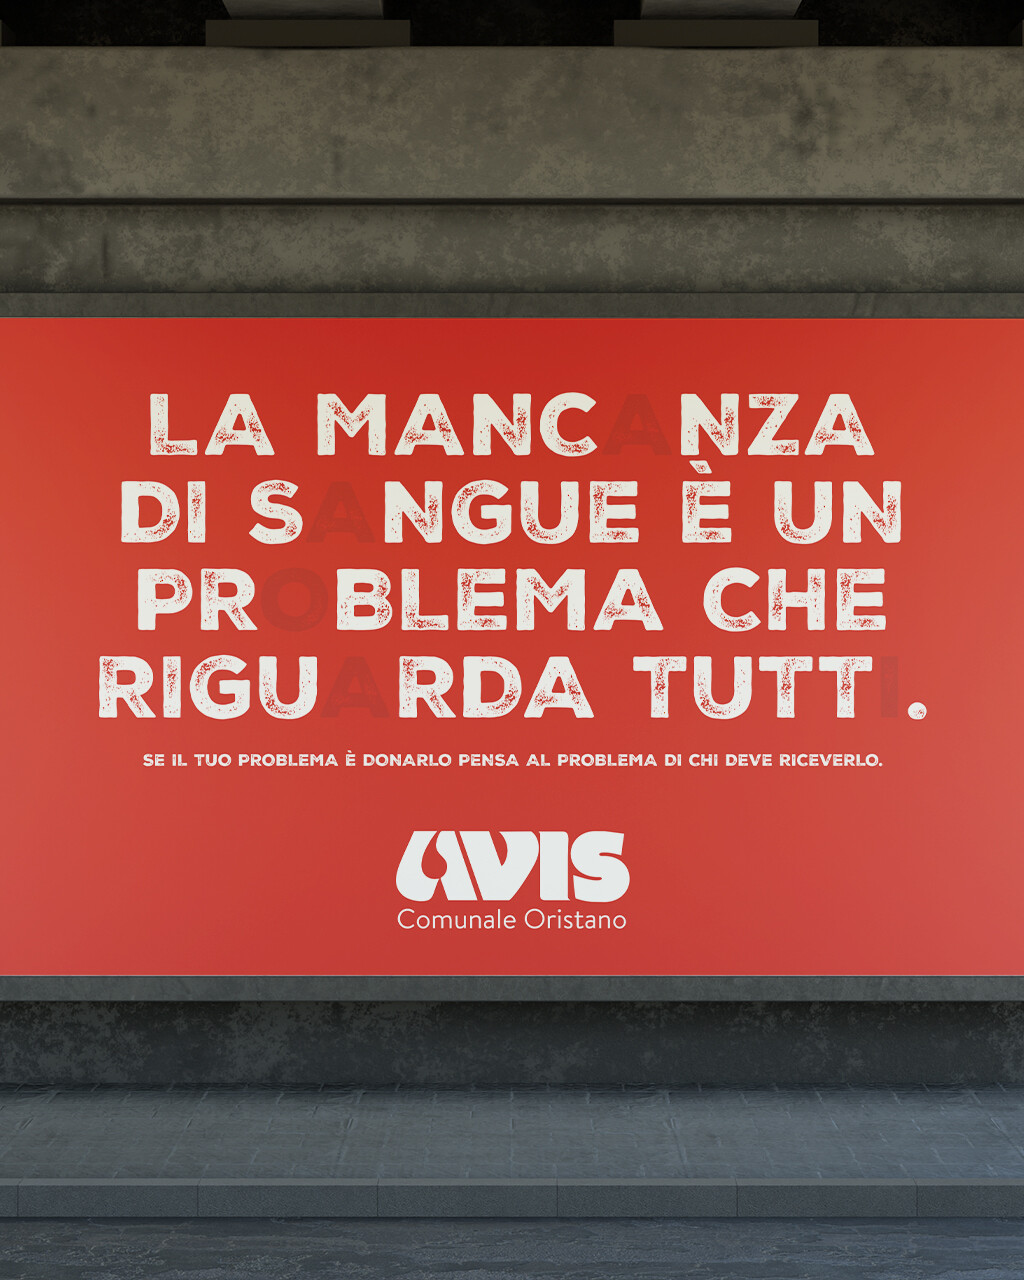 Manifesto Avis Oristano con scritto 'la mancanza di sangue è un problema che riguarda tutti'